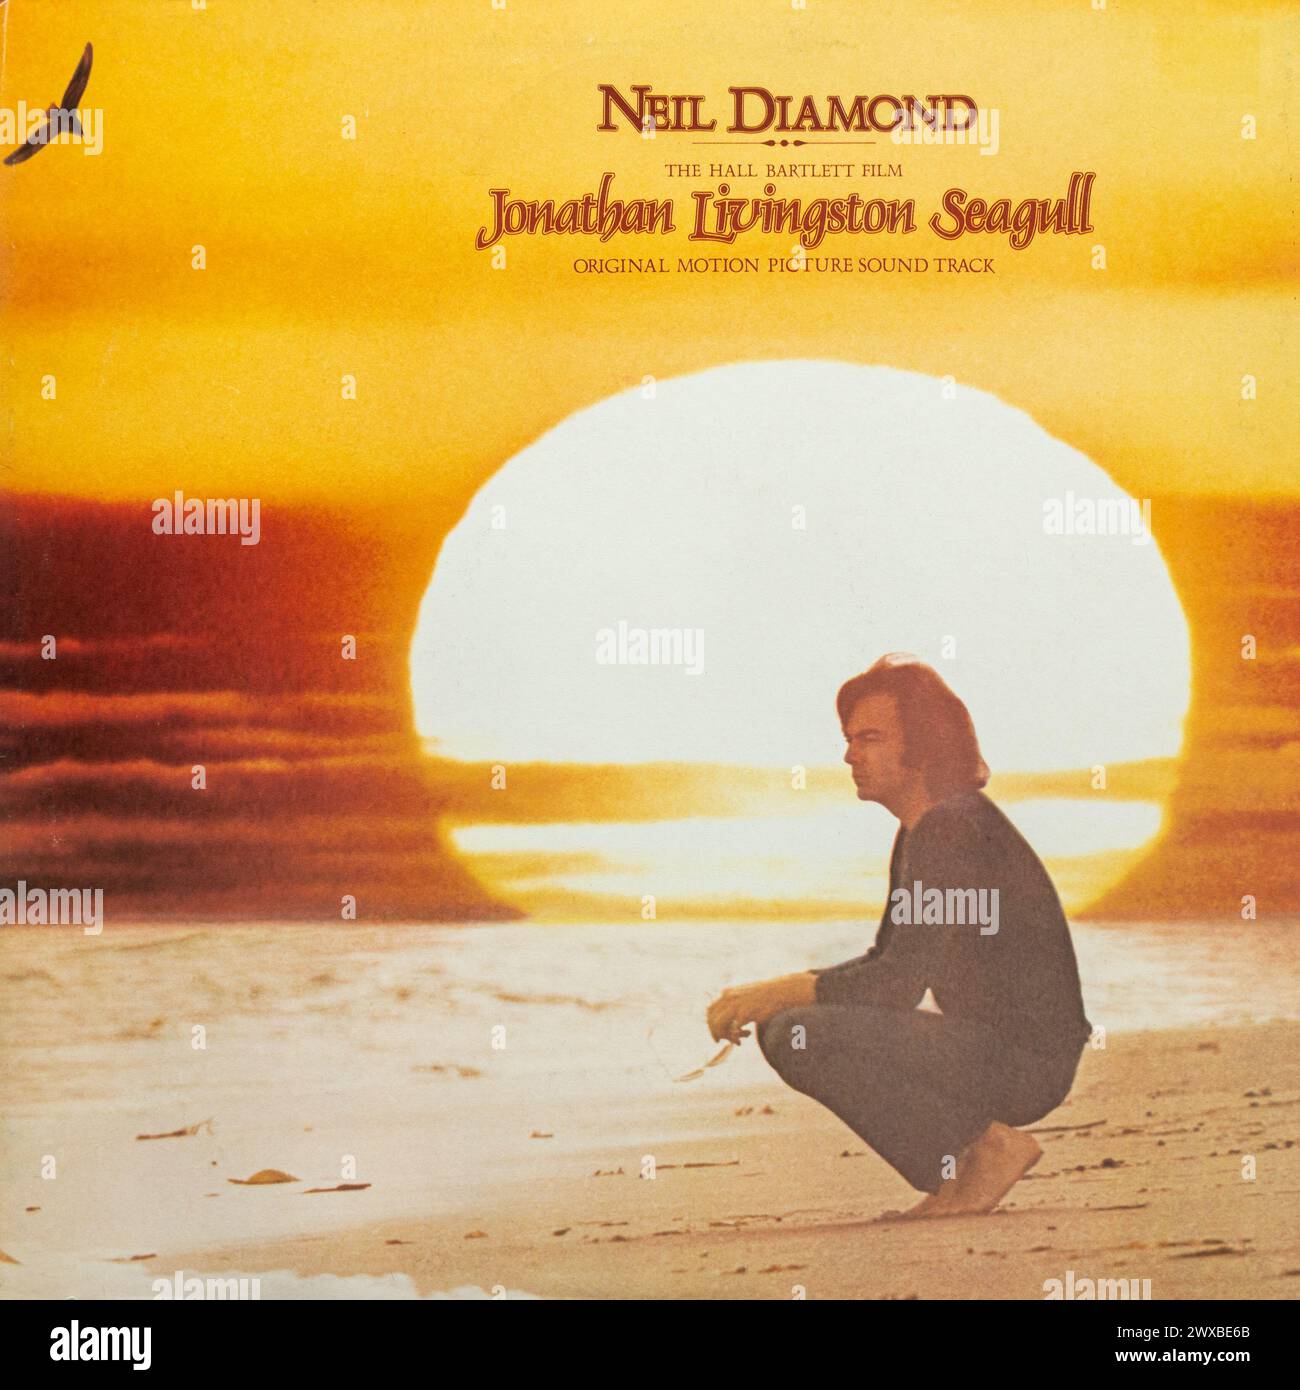 Jonathan Livingston Seagull, soundtrack album by American singer songwriter Neil Diamond, vinyl LP record album cover Stock Photo